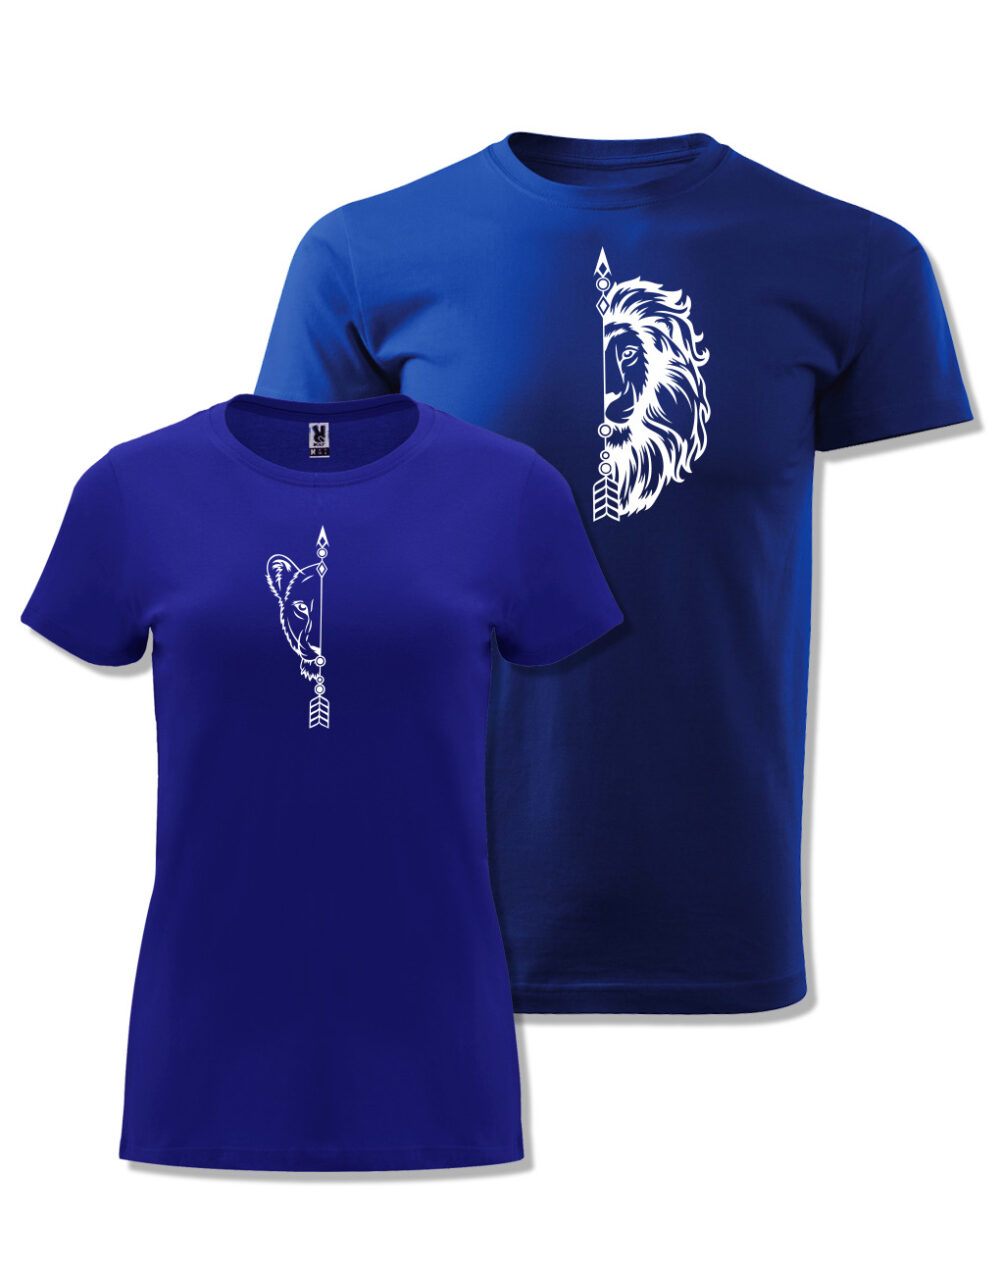 Párová trička s potiskem Lev & Lvice královská modrá